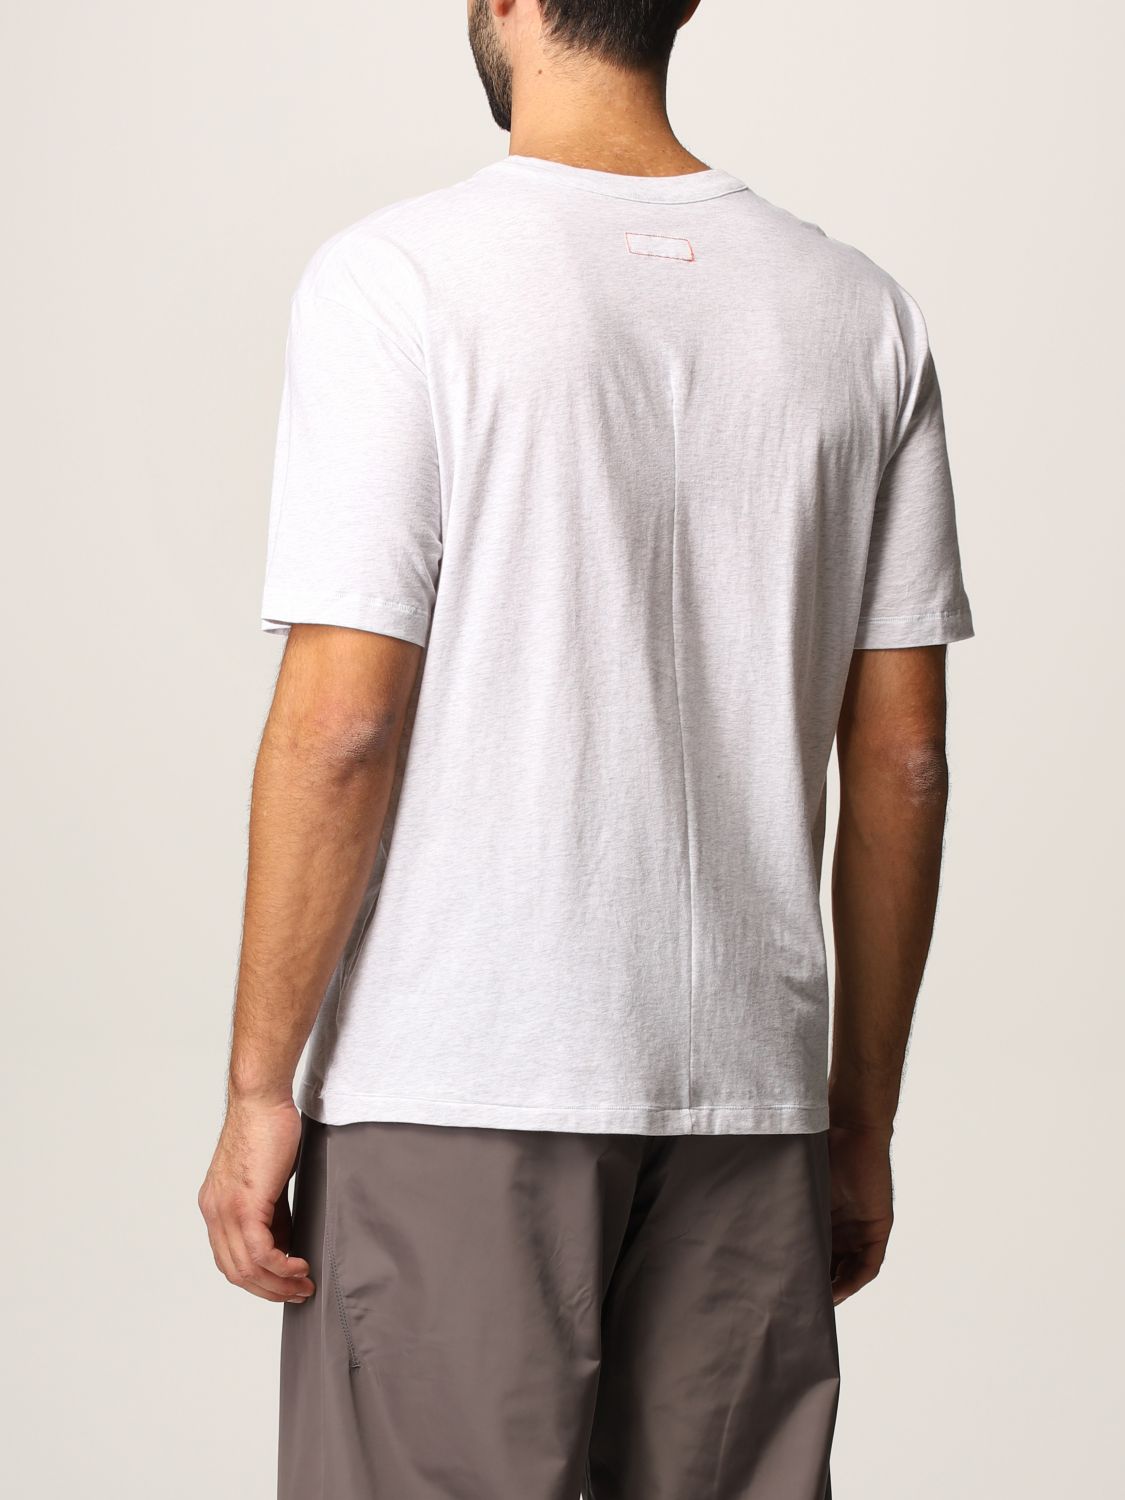 T-Shirt Heron Preston For Calvin Klein: T-shirt herren Orange 2.0-heron Preston X Calvin Klein schwarz 4